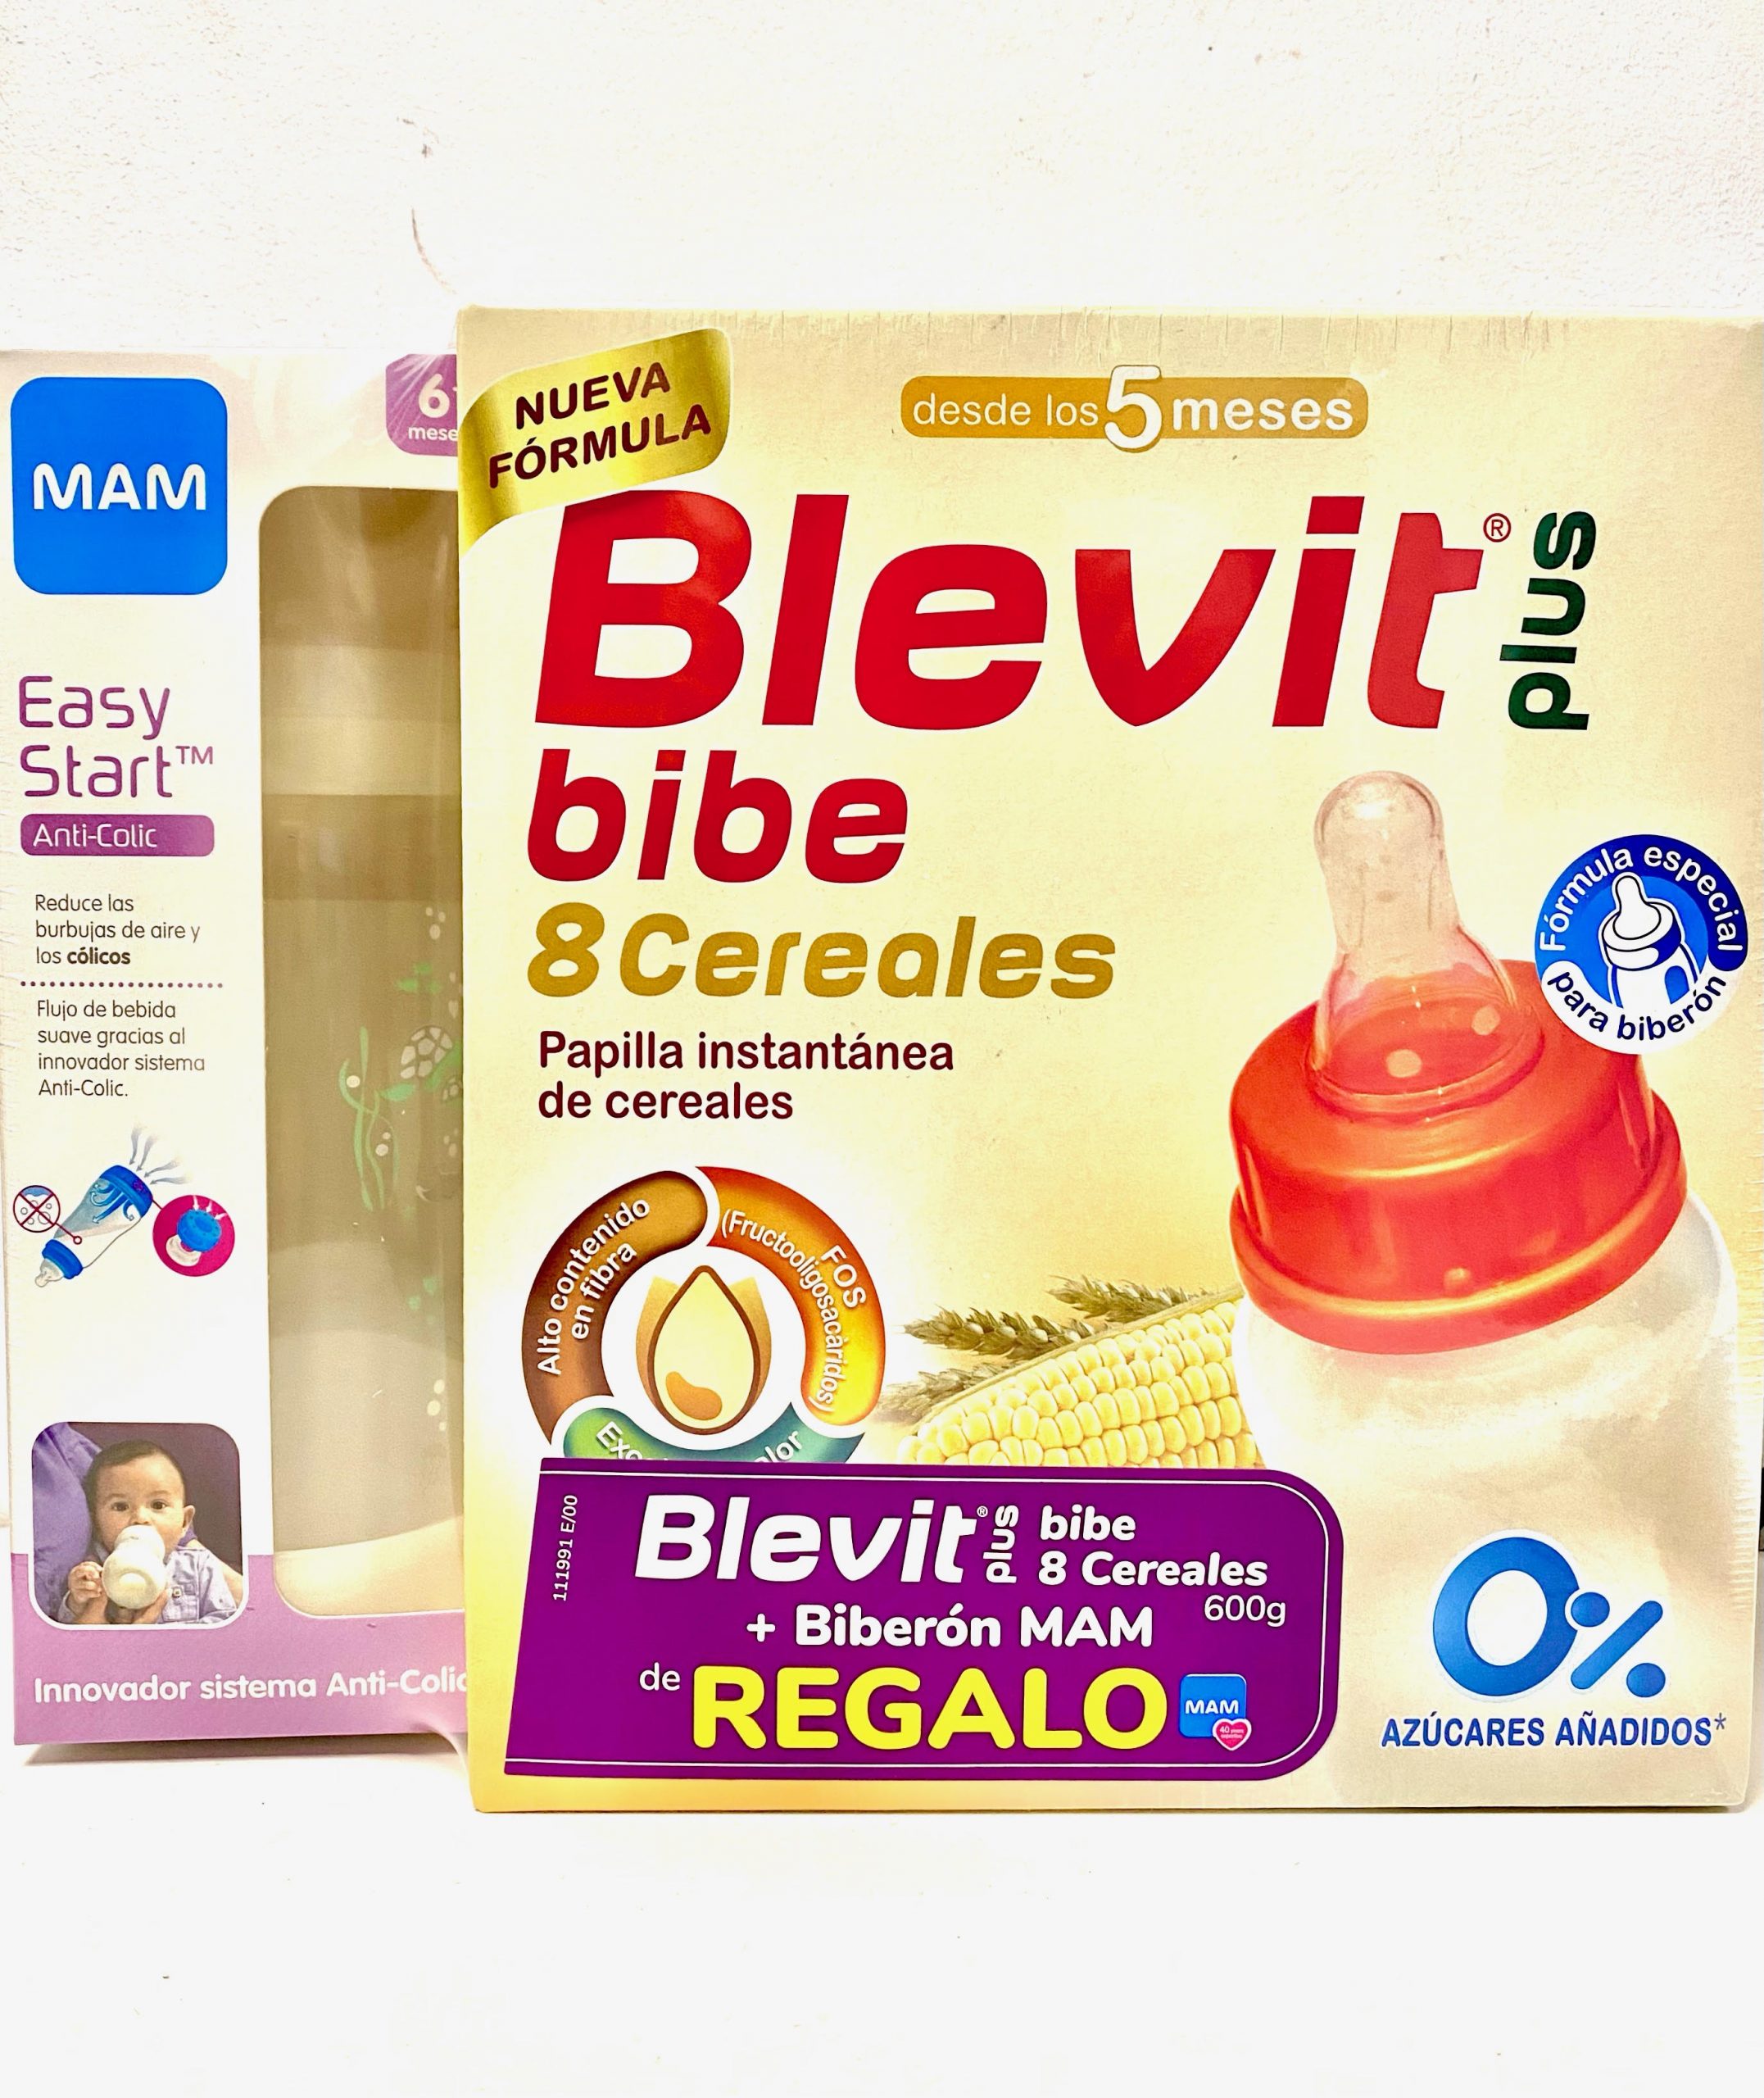 Blevit Plus Bibe 8 Cereales y ColaCao - Papilla de Cereales para Bebé  fórmula especial para Biberón - Sabor Cola Cao - Desde los 12 meses - 600g  : .es: Alimentación y bebidas